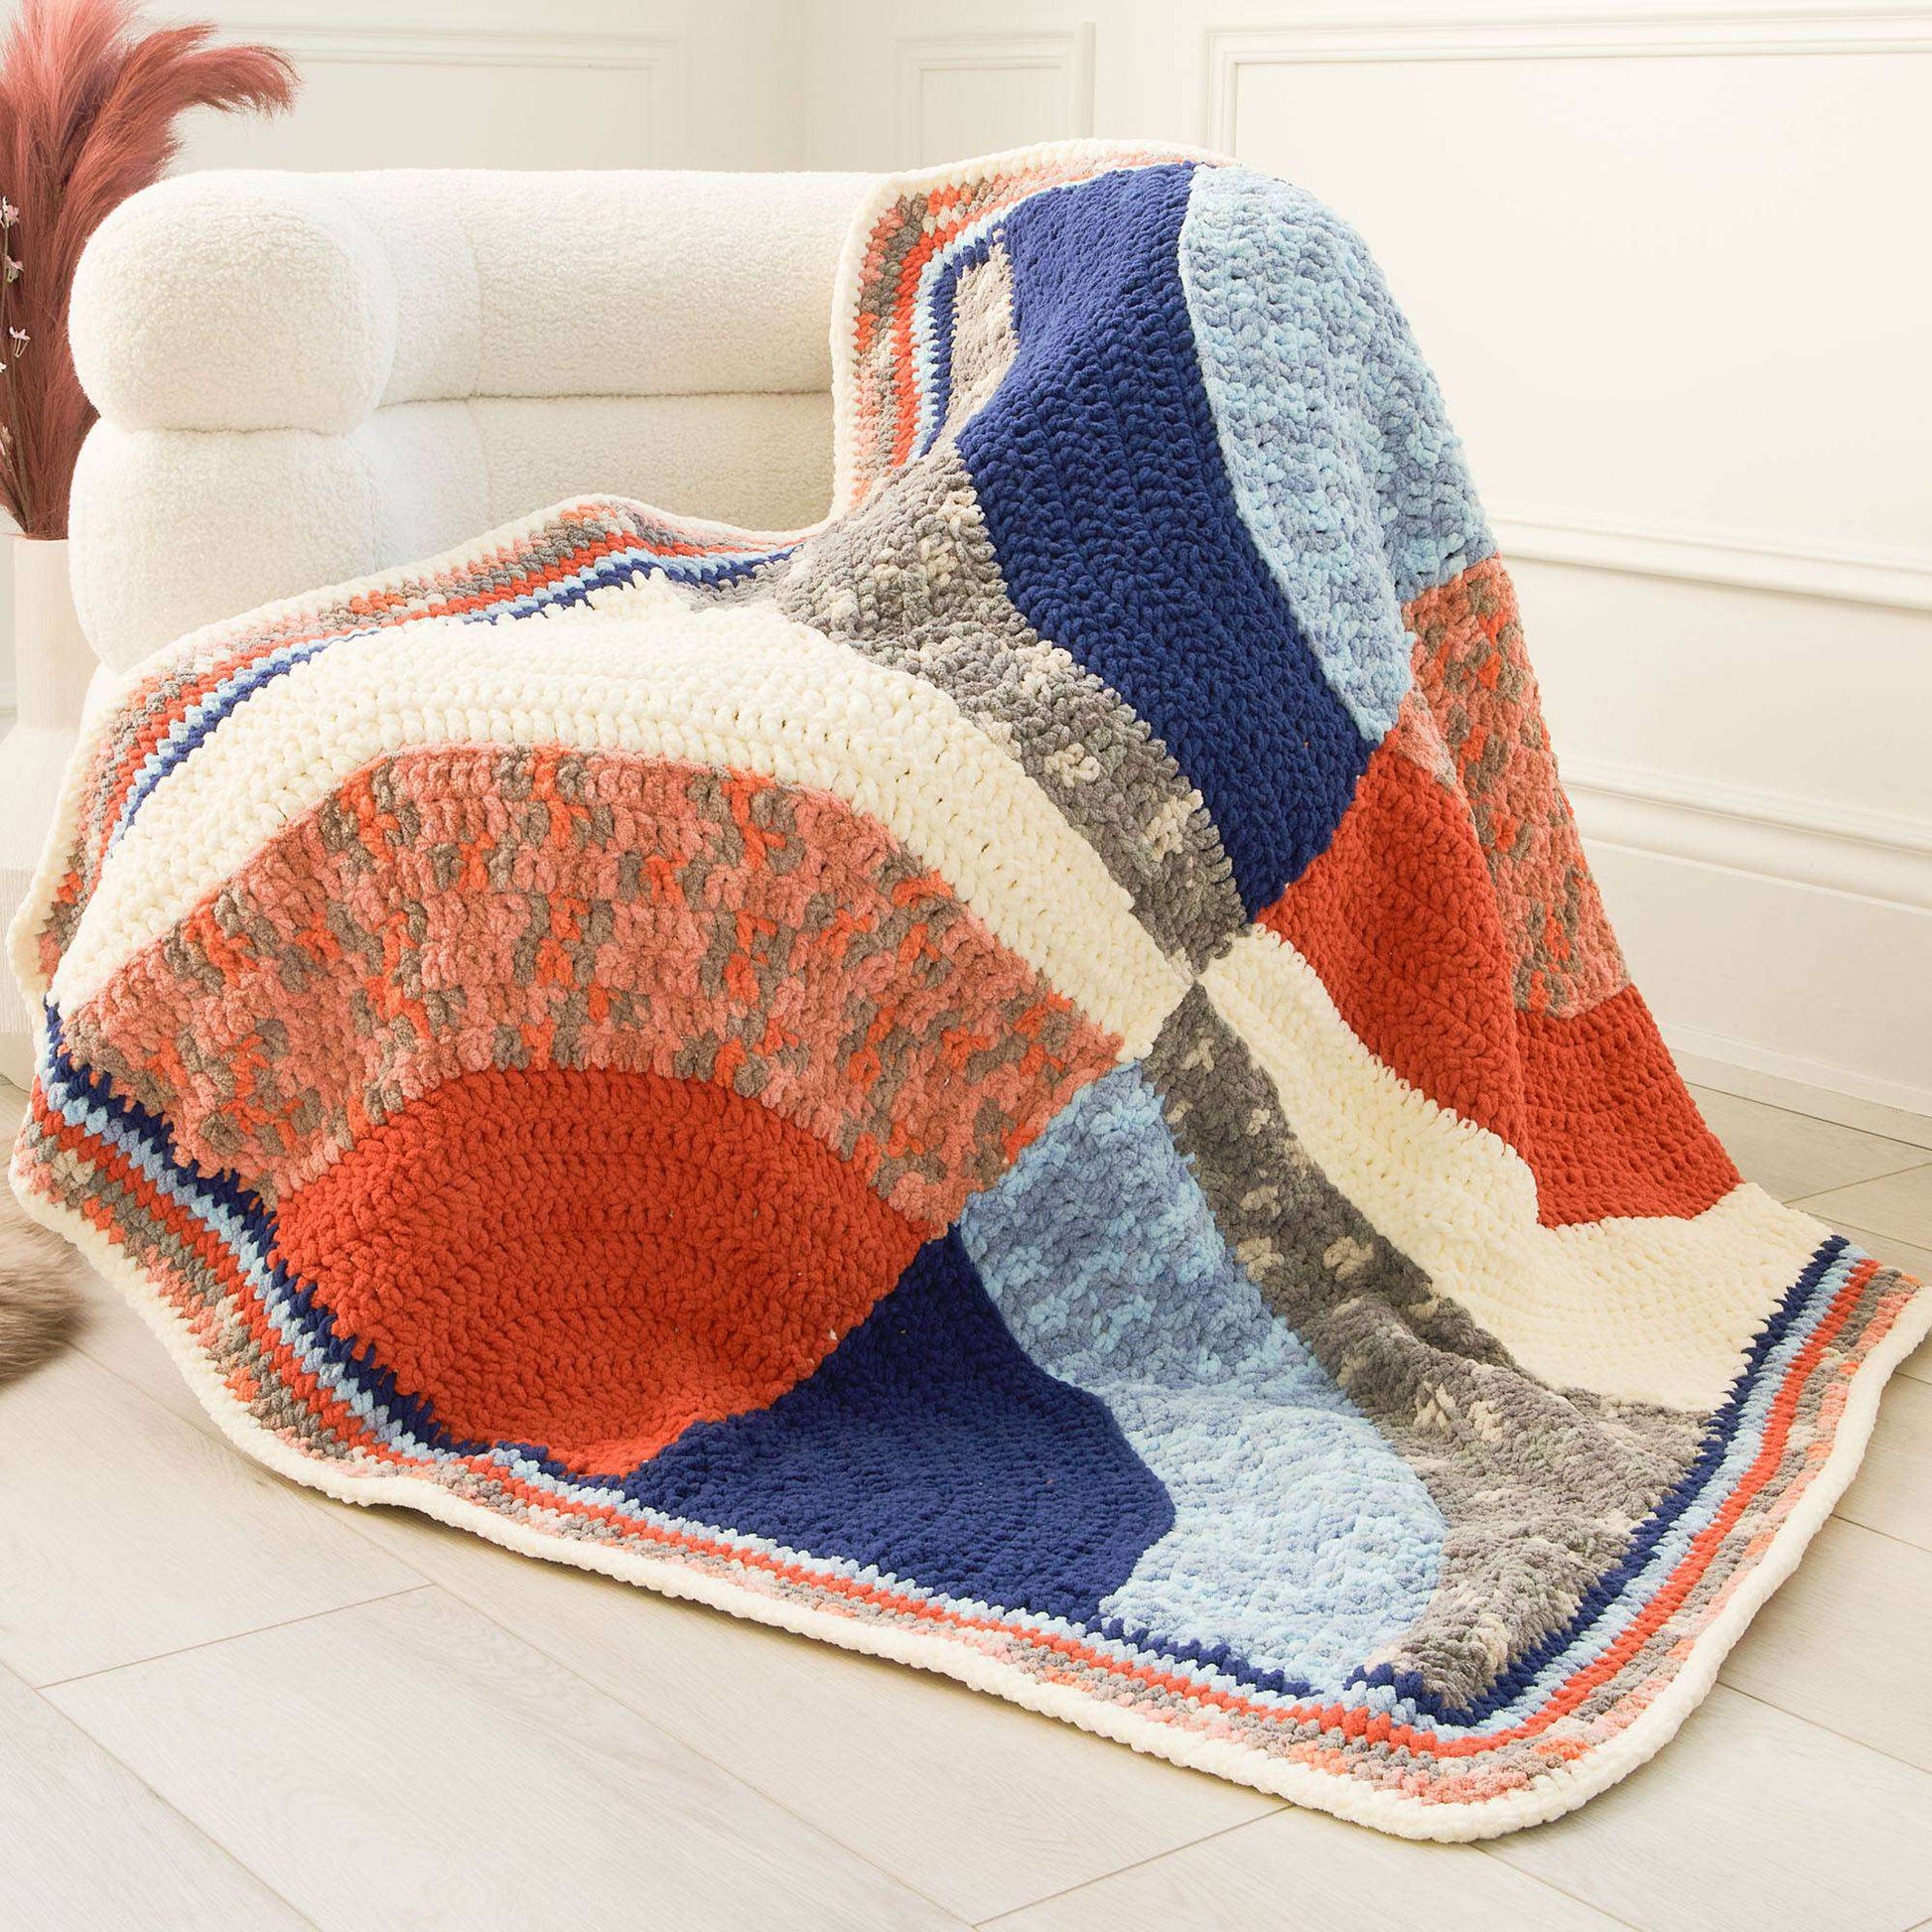 Free Bernat Half Moon Crochet Blanket Pattern